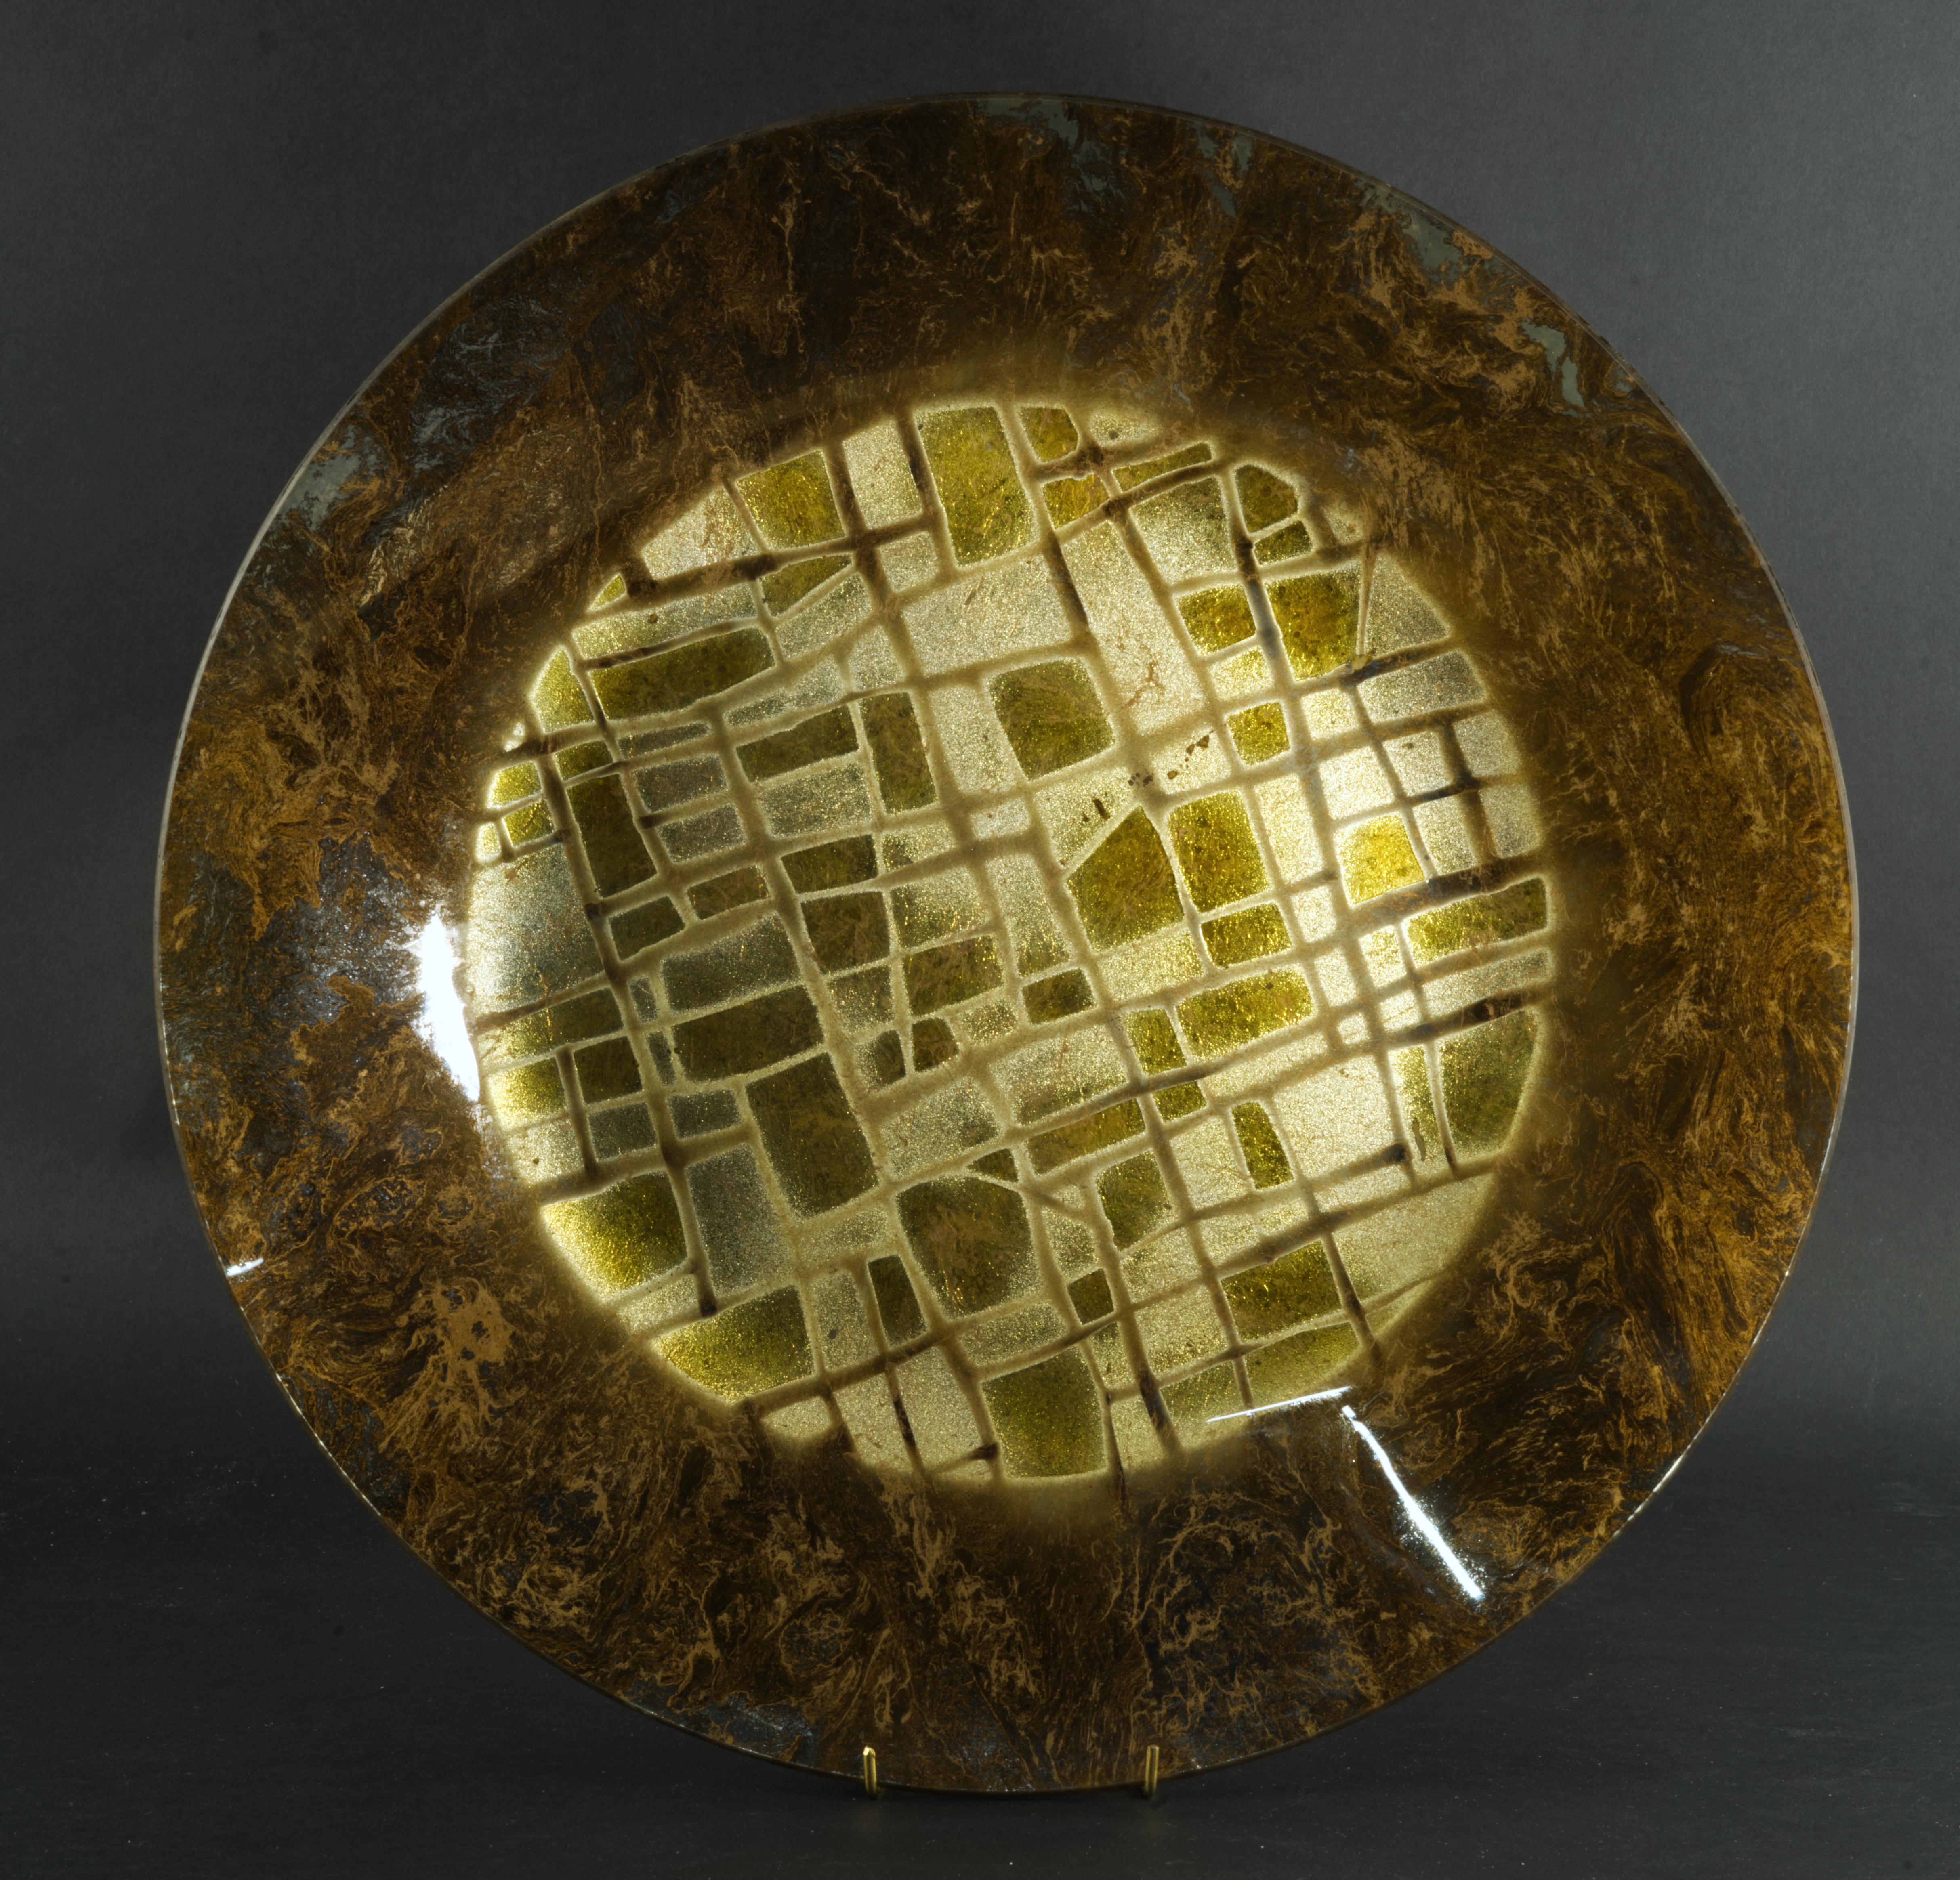 
Ce rare plat ou bol en verre a été fabriqué à la main par Dick Talbett pour son studio Ancient Glass dans les années 1950, dans le cadre de la série Radiant Temple. Le bol présente un motif graphique abstrait en or et en argent au centre, entouré